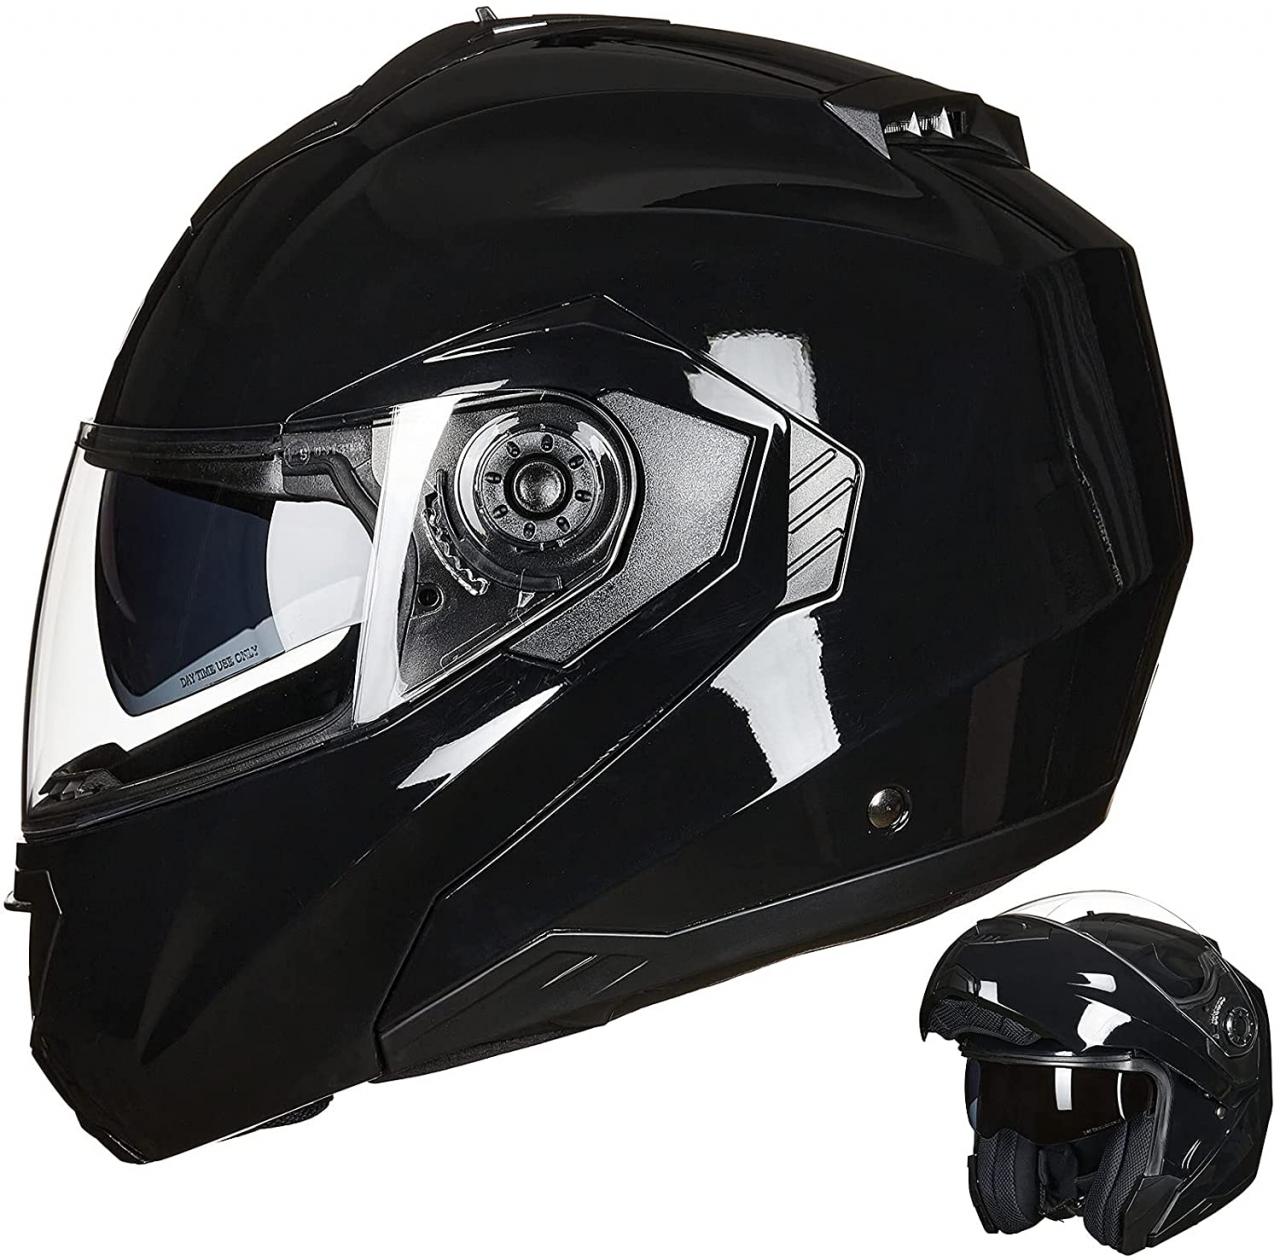 Buy ILM Motorcycle Dual Visor Flip up Modular Full Face Helmet DOT 6 Colors  (Visor, Clear) Online in Vietnam. B074KZ8XH5